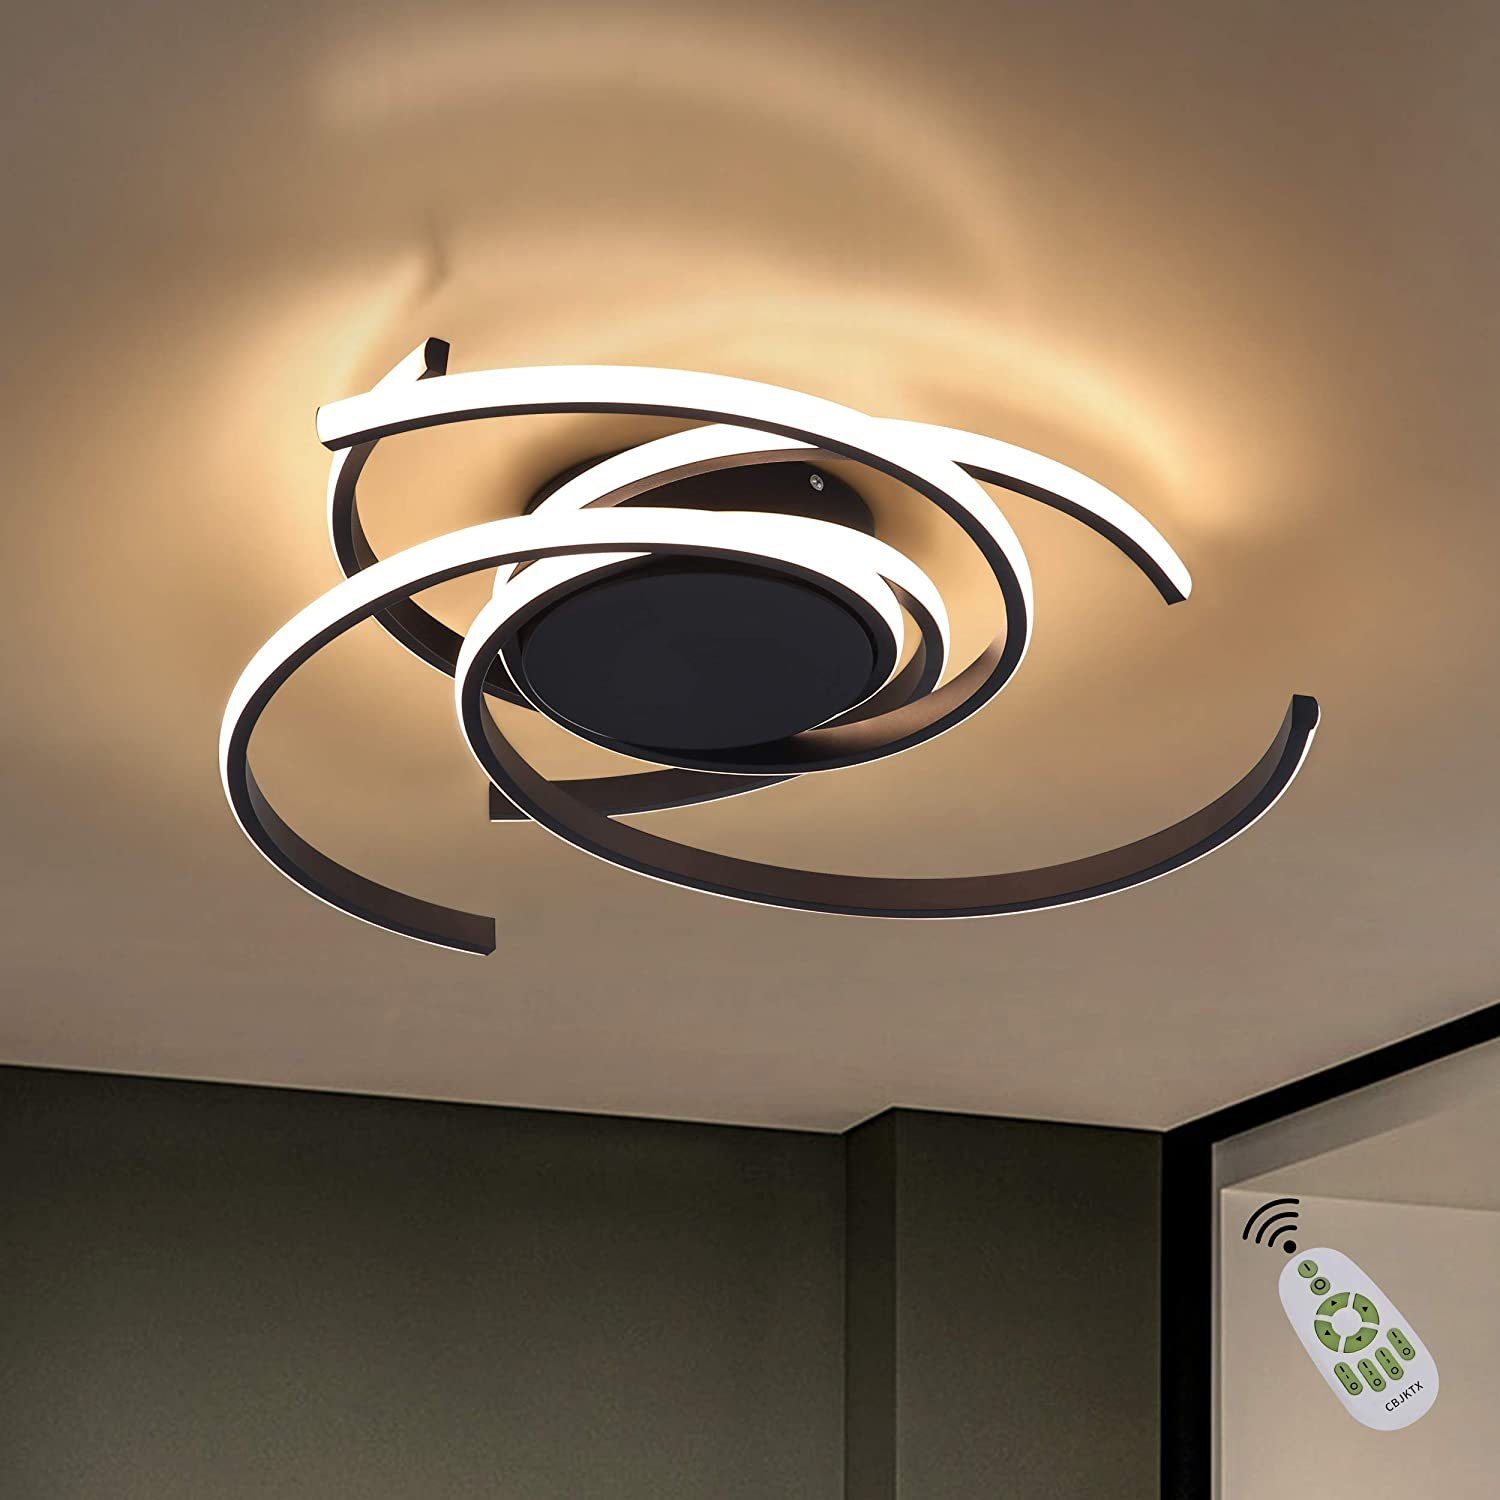 LED Decken Lampe Design Leuchte Beleuchtung Wohn Schlaf Zimmer Flur Bad Küche 